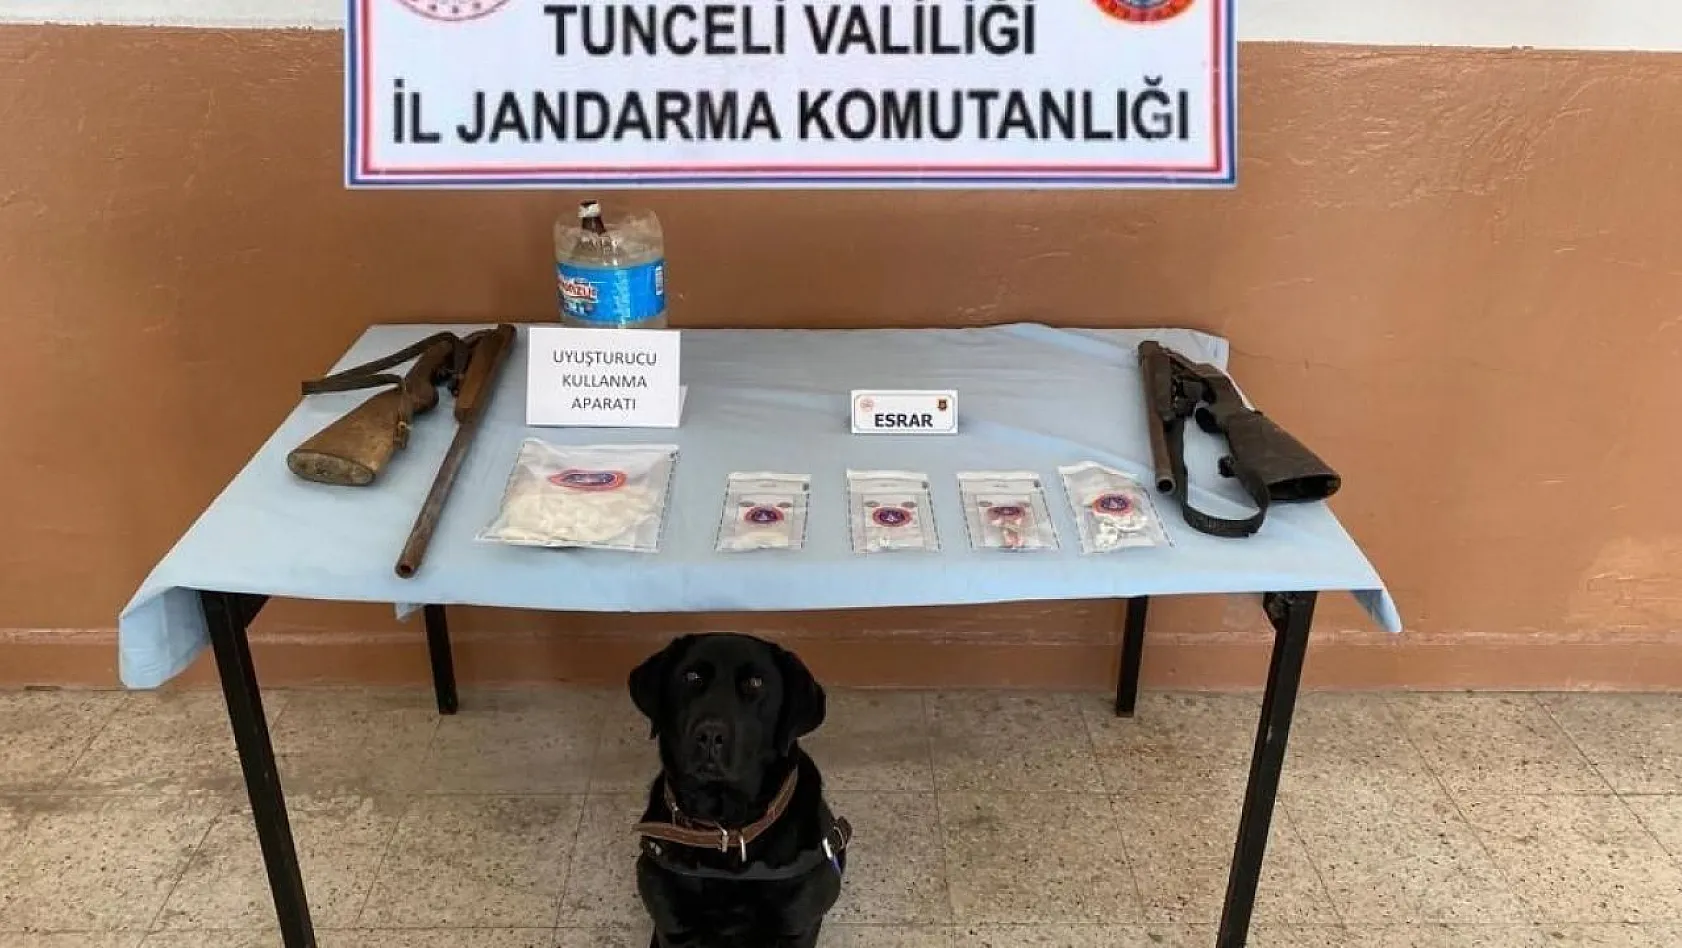 Tunceli'de uyuşturucu operasyonu: 11 gözaltı